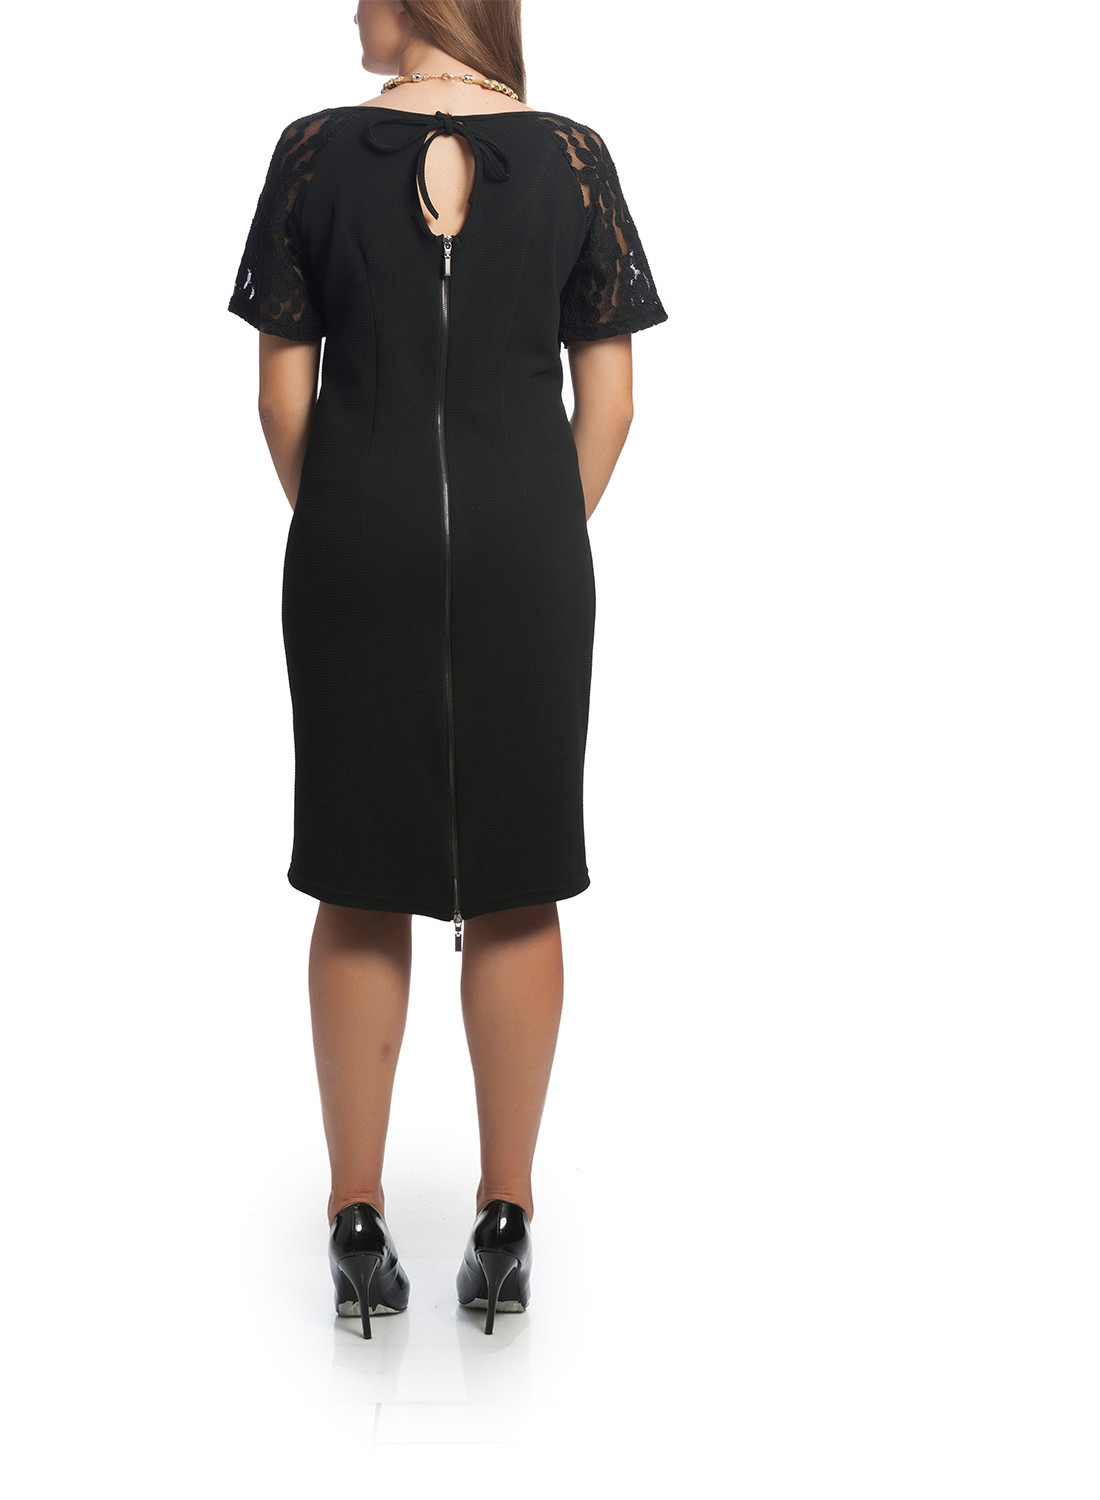 Μαύρο φόρεμα με λεπτομέρειες δαντέλας